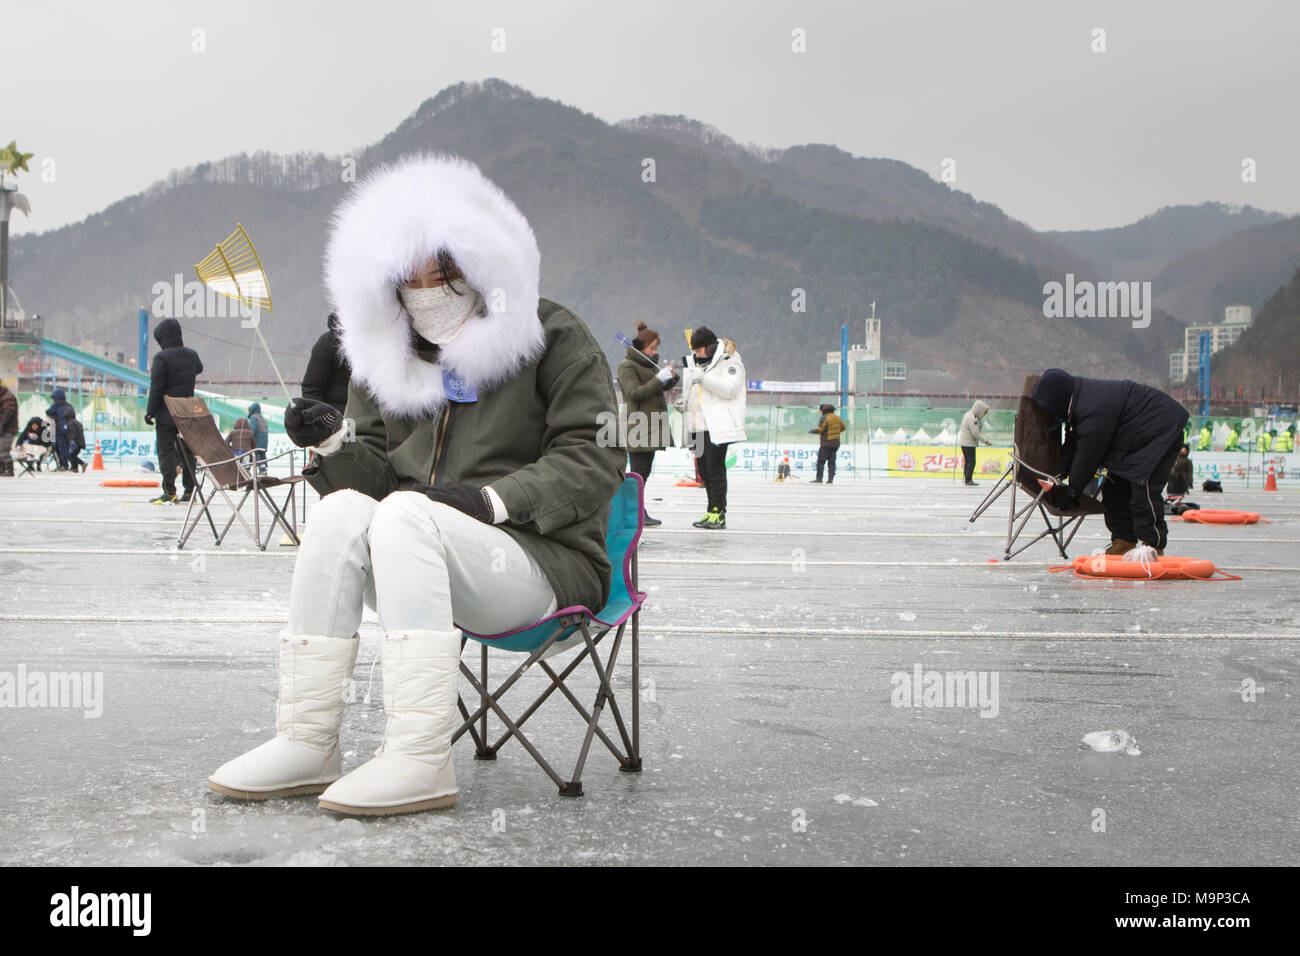 Eine Frau herzlich in einem dicken Fell gekleidet wartet oben ein Loch in das Eis während der Eis angeln Festival an Hwacheon Sancheoneo in der Region Gangwon-do in Südkorea. Die Hwacheon Sancheoneo Ice Festival ist eine Tradition für die Menschen in Korea. Jedes Jahr im Januar Menschenmassen versammeln sich auf dem zugefrorenen Fluss der Kälte und dem Schnee des Winters zu feiern. Hauptattraktion ist Eisfischen. Jung und Alt warten geduldig auf ein kleines Loch im Eis für eine Forelle zu beißen. In zelten Sie können den Fisch vom Grill, nach dem sie gegessen werden. Unter anderem sind Rodeln und Eislaufen. Die in der Nähe Pyeongchang Stockfoto